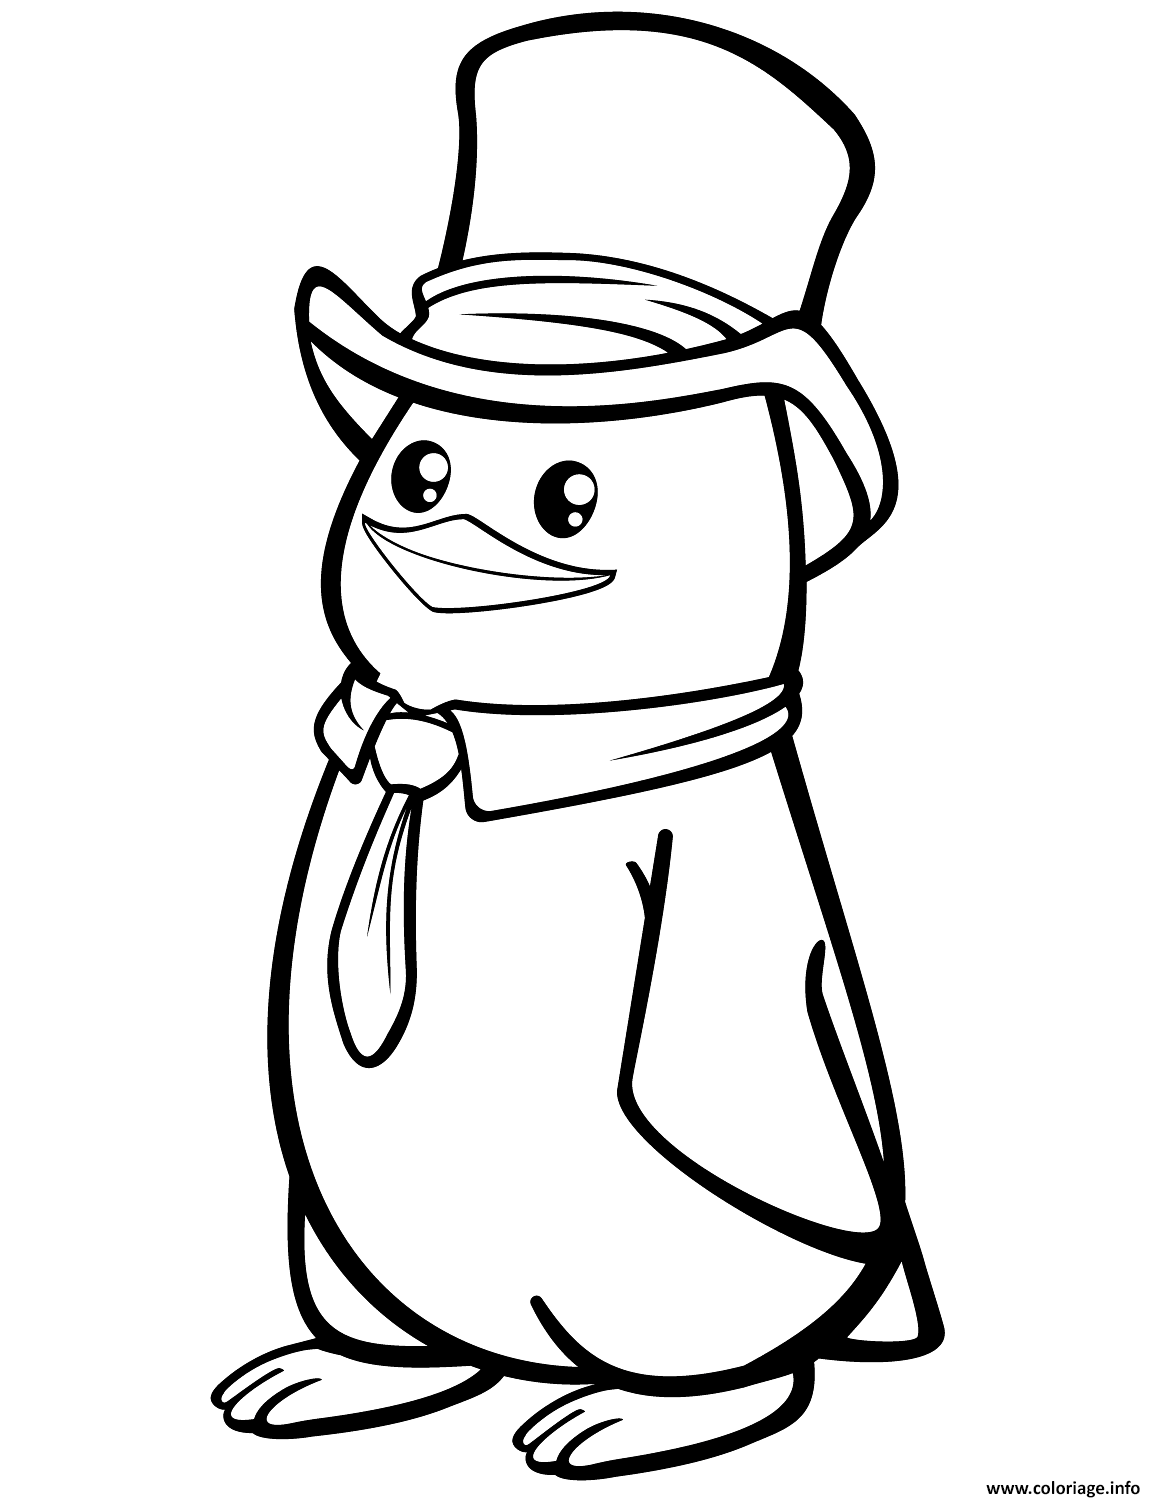 coloriage pungouin polaire avec une tenue chic dessin animaux mignon a imprimer de chapeaux chimio et turban